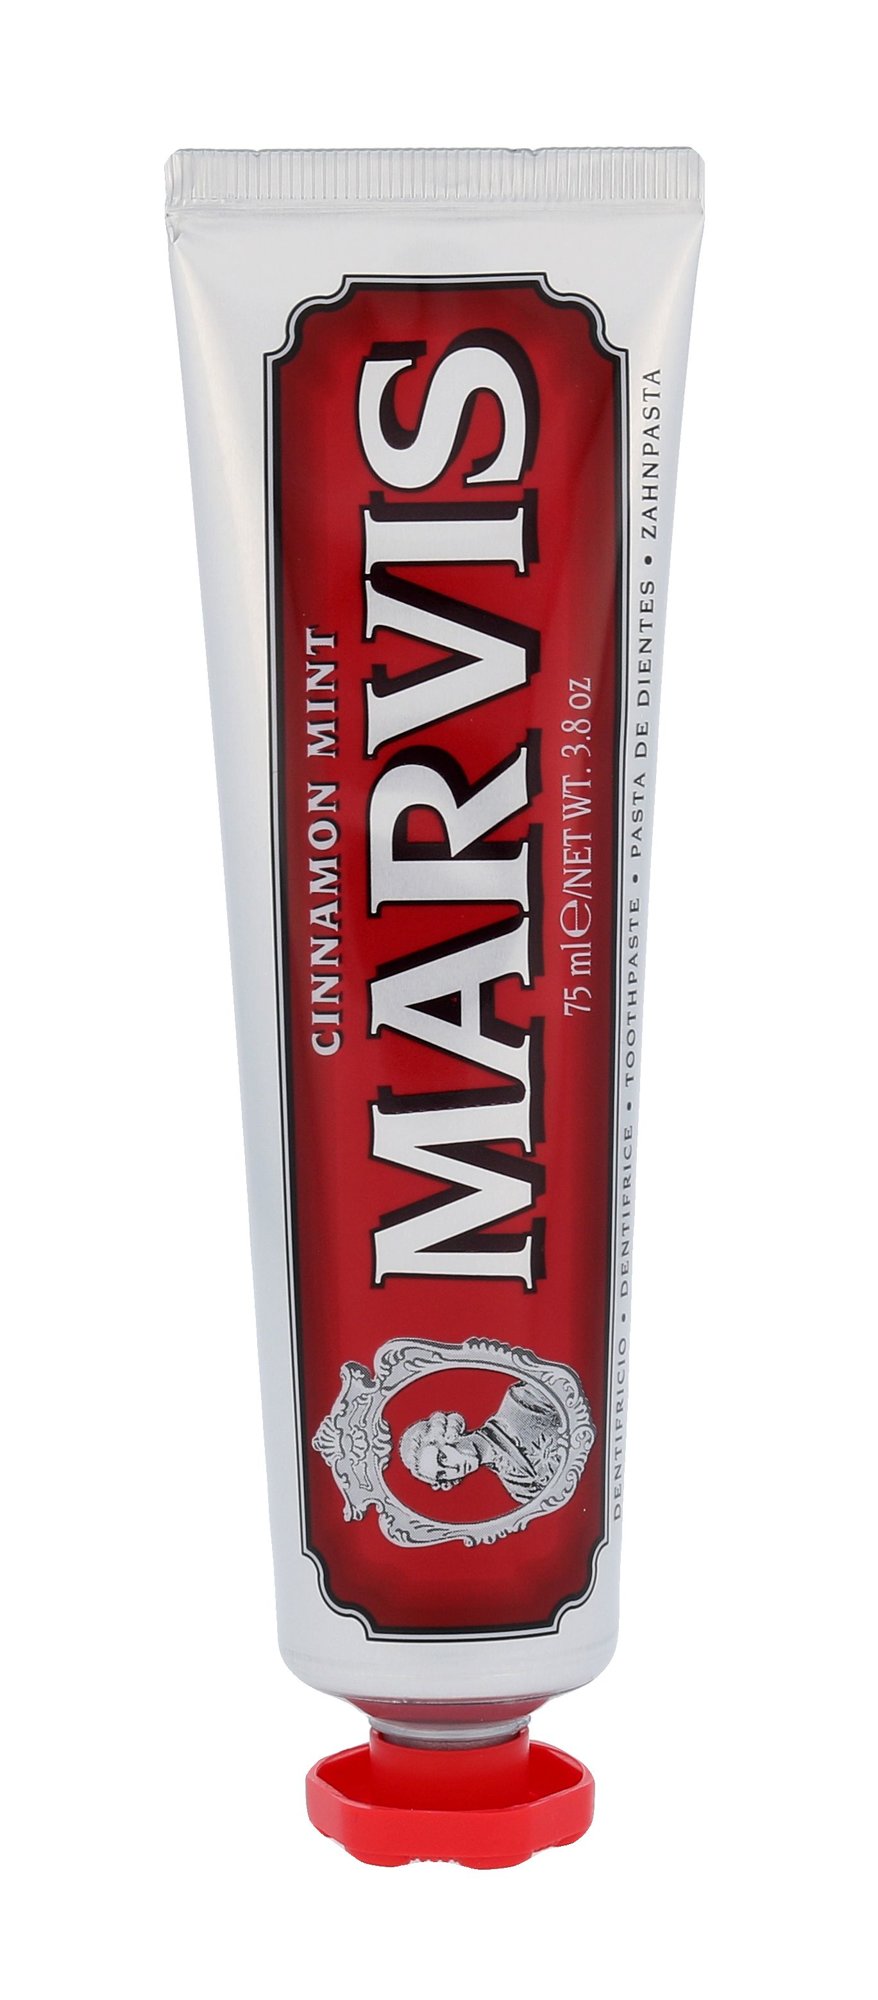 Marvis Toothpaste Cinnamon Mint